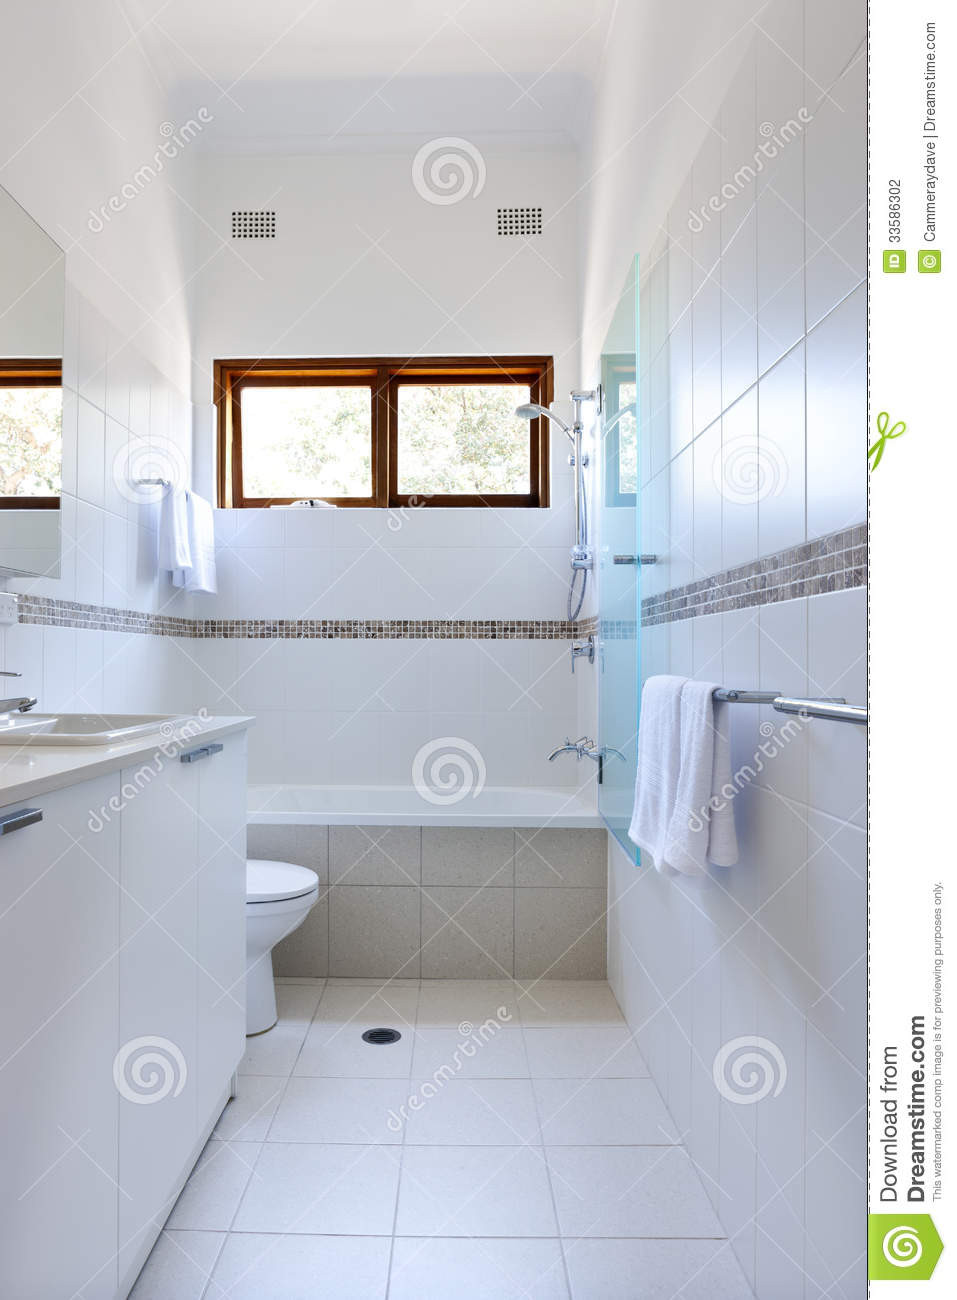 Weiße Fliesen
 Weiße Badezimmer Fliesen Stockfotografie Bild